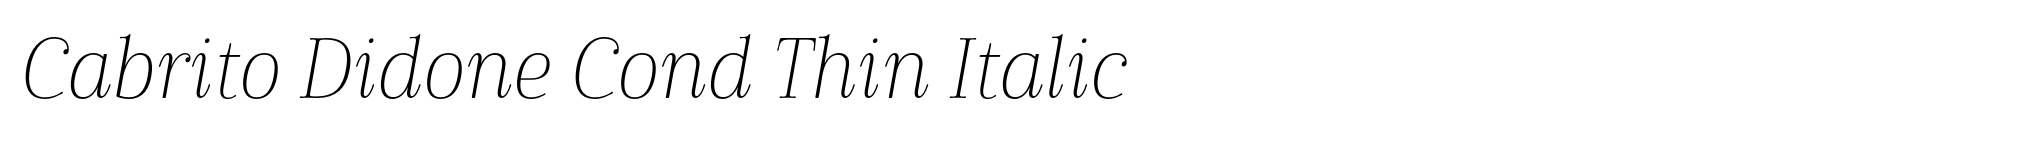 Cabrito Didone Cond Thin Italic image